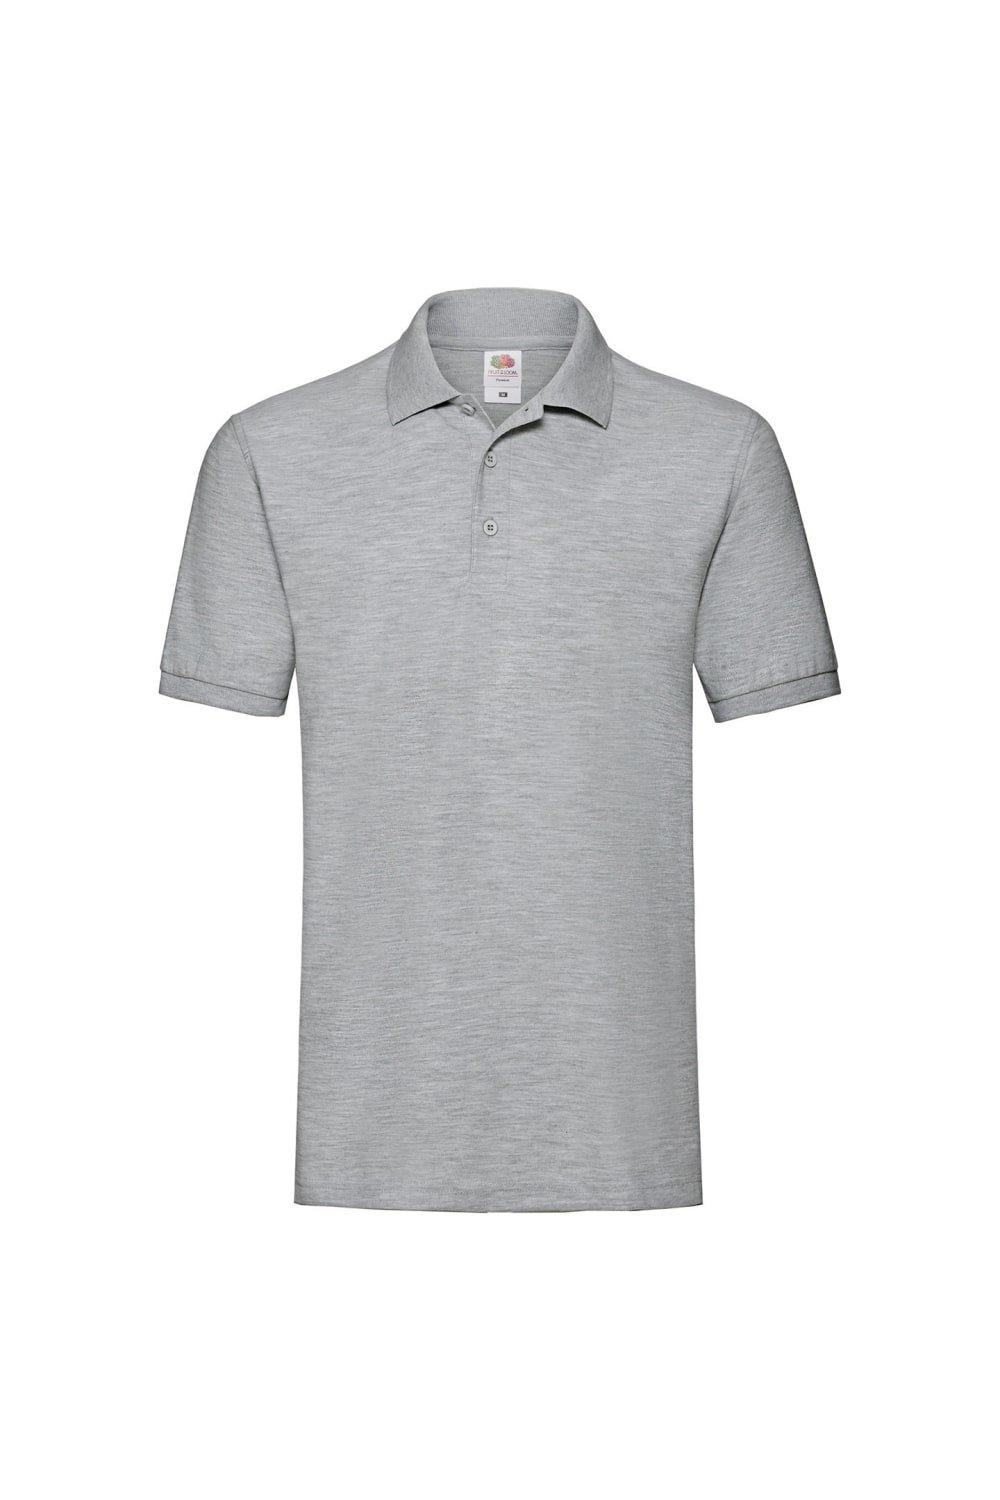 Рубашка-поло премиум-класса с принтом Fruit of the Loom, серый